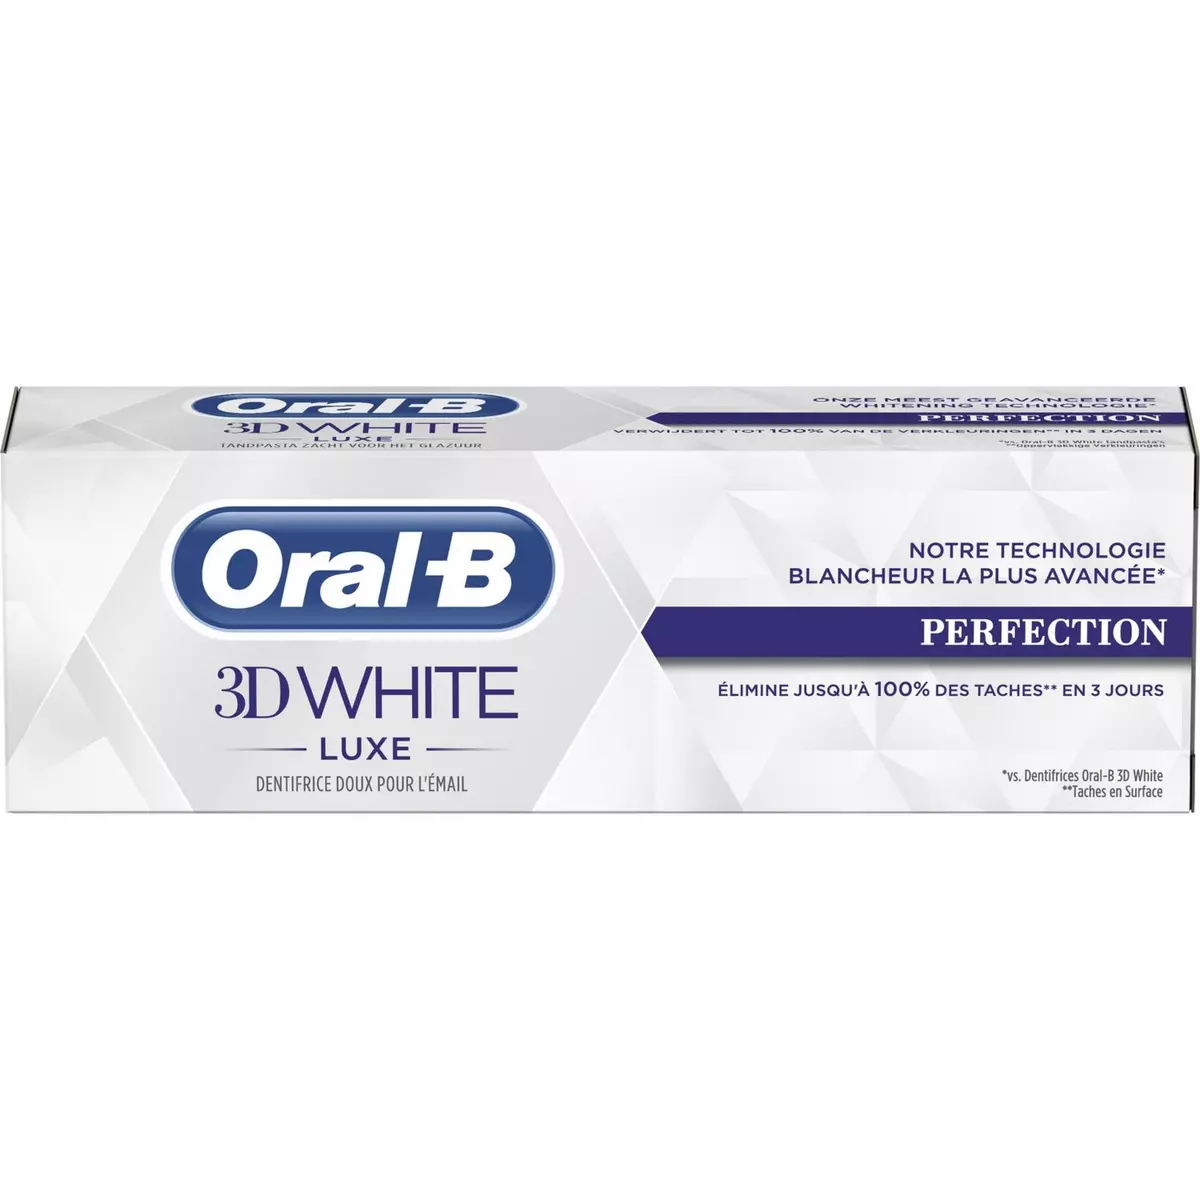 ORAL-B 3D White dentifrice doux pour l'émail perfection blancheur 75ml